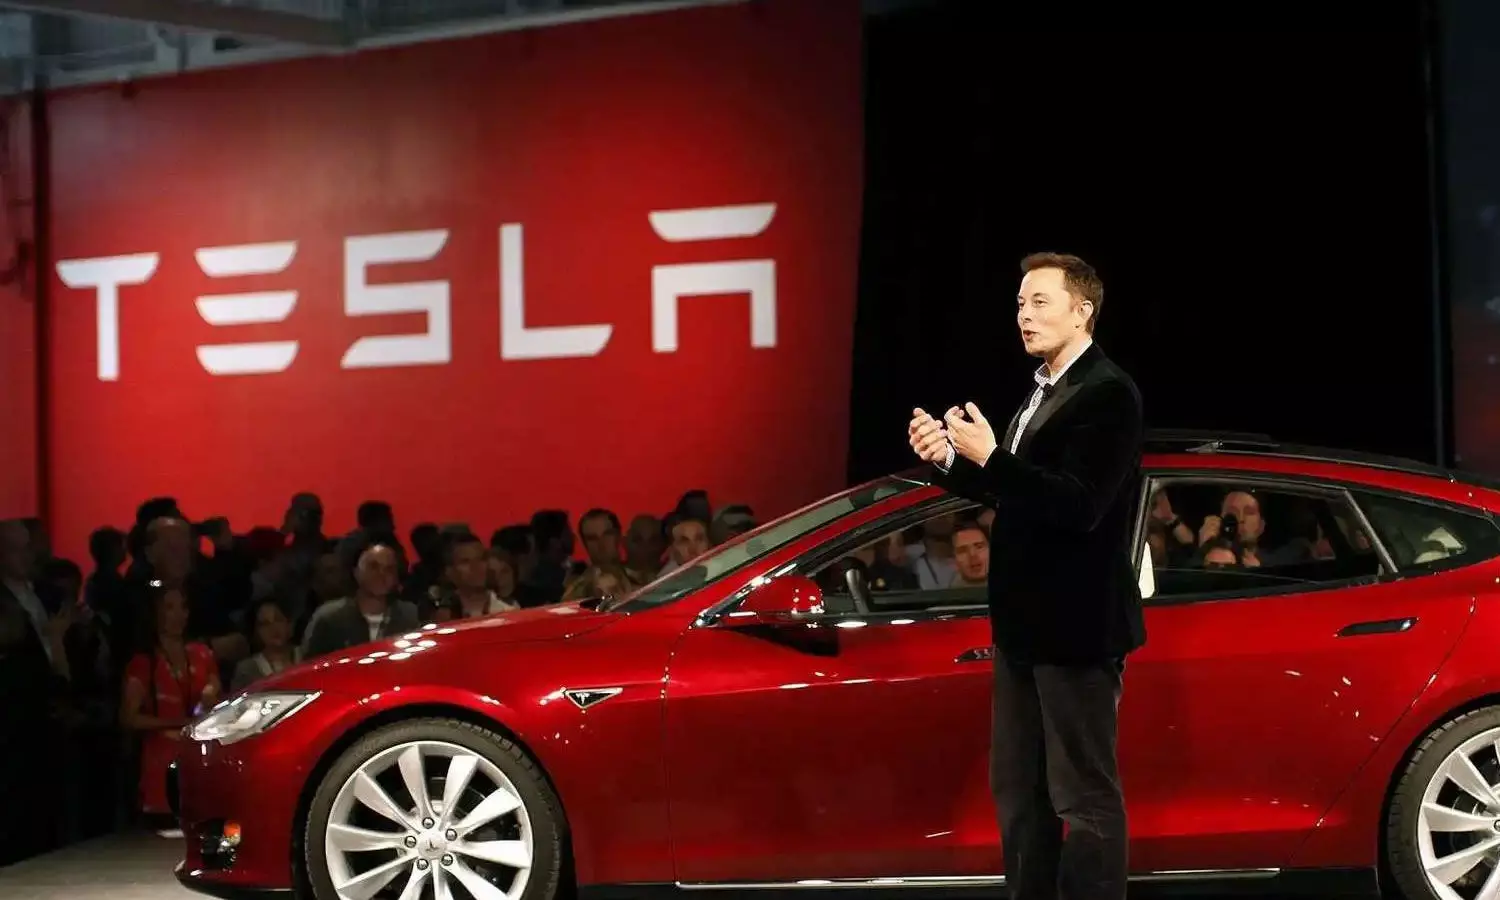 Tesla - Elon Musk | భార‌త్‌లోకి టెస్లా ఈవీ కార్ల ఎంట్రీ ప‌క్కా.. తేల్చేసిన ఎల‌న్‌మ‌స్క్‌..!